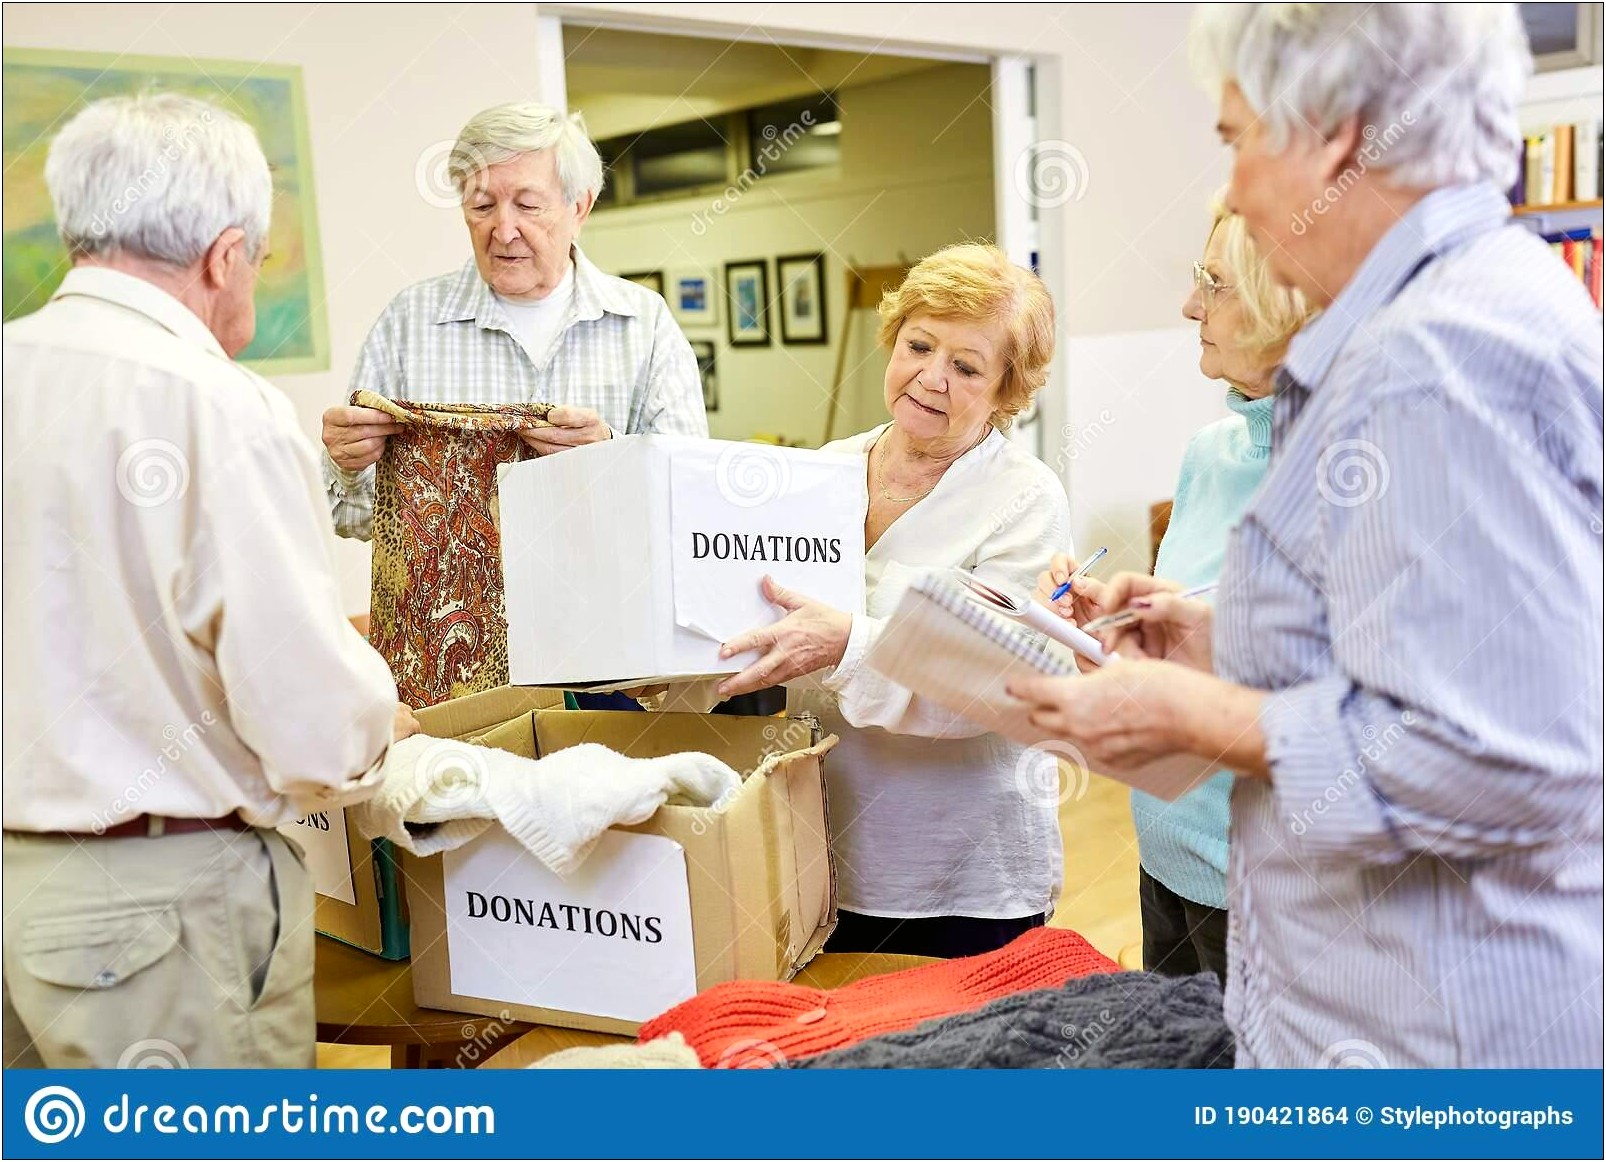 Volunteering With Senior Citizens Resume Description